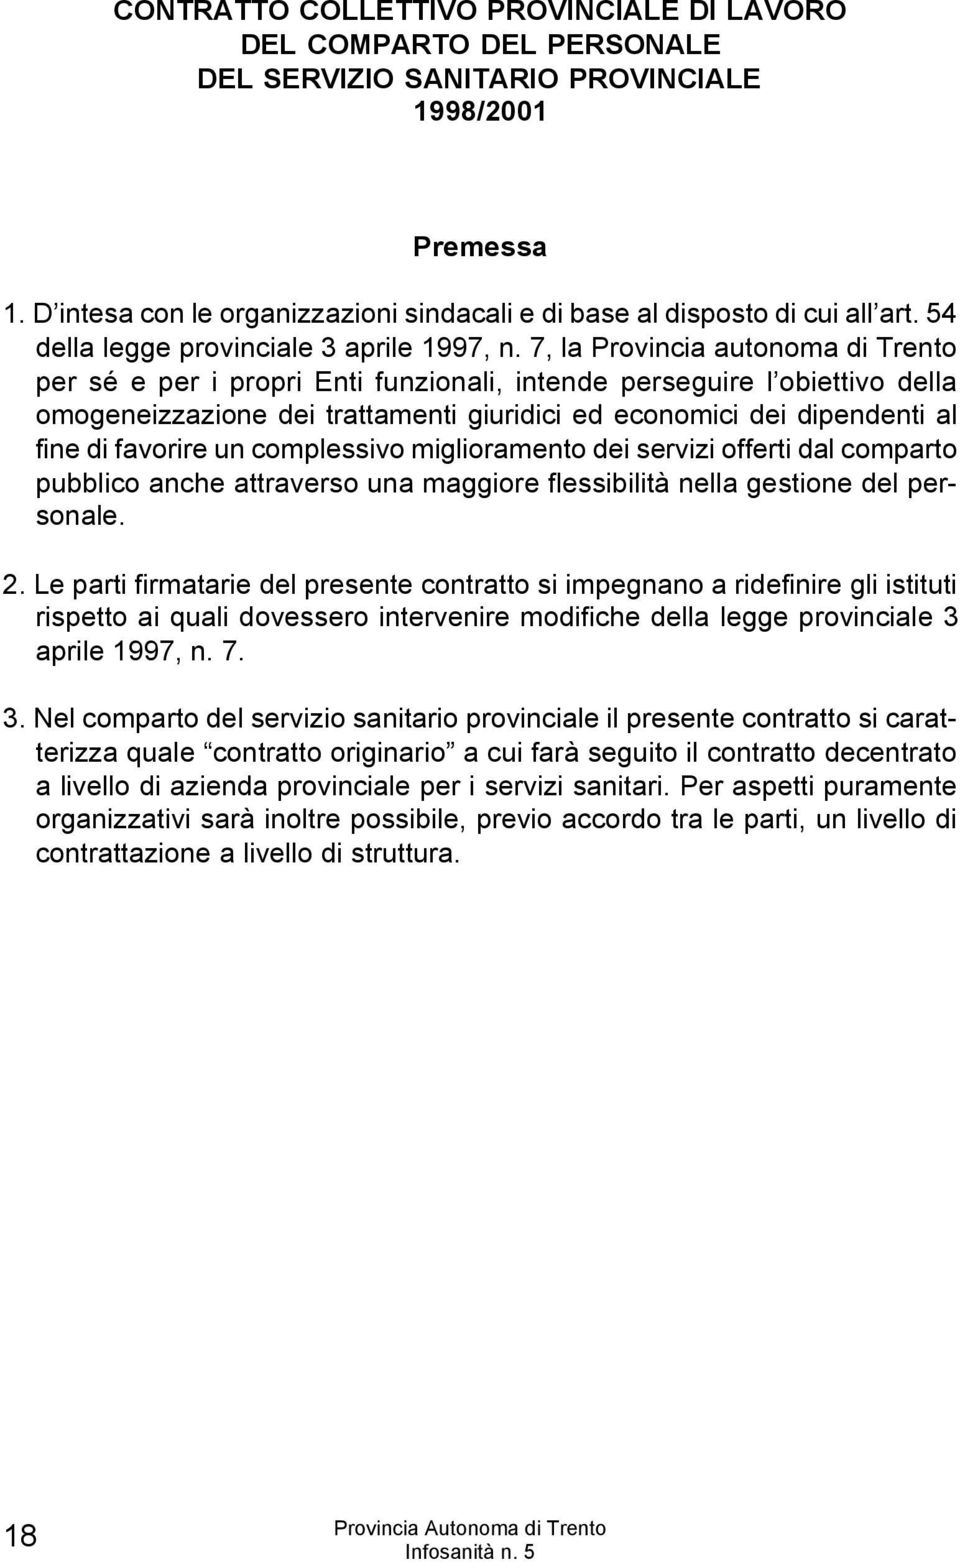 7, la Provincia autonoma di Trento per sé e per i propri Enti funzionali, intende perseguire l obiettivo della omogeneizzazione dei trattamenti giuridici ed economici dei dipendenti al fine di